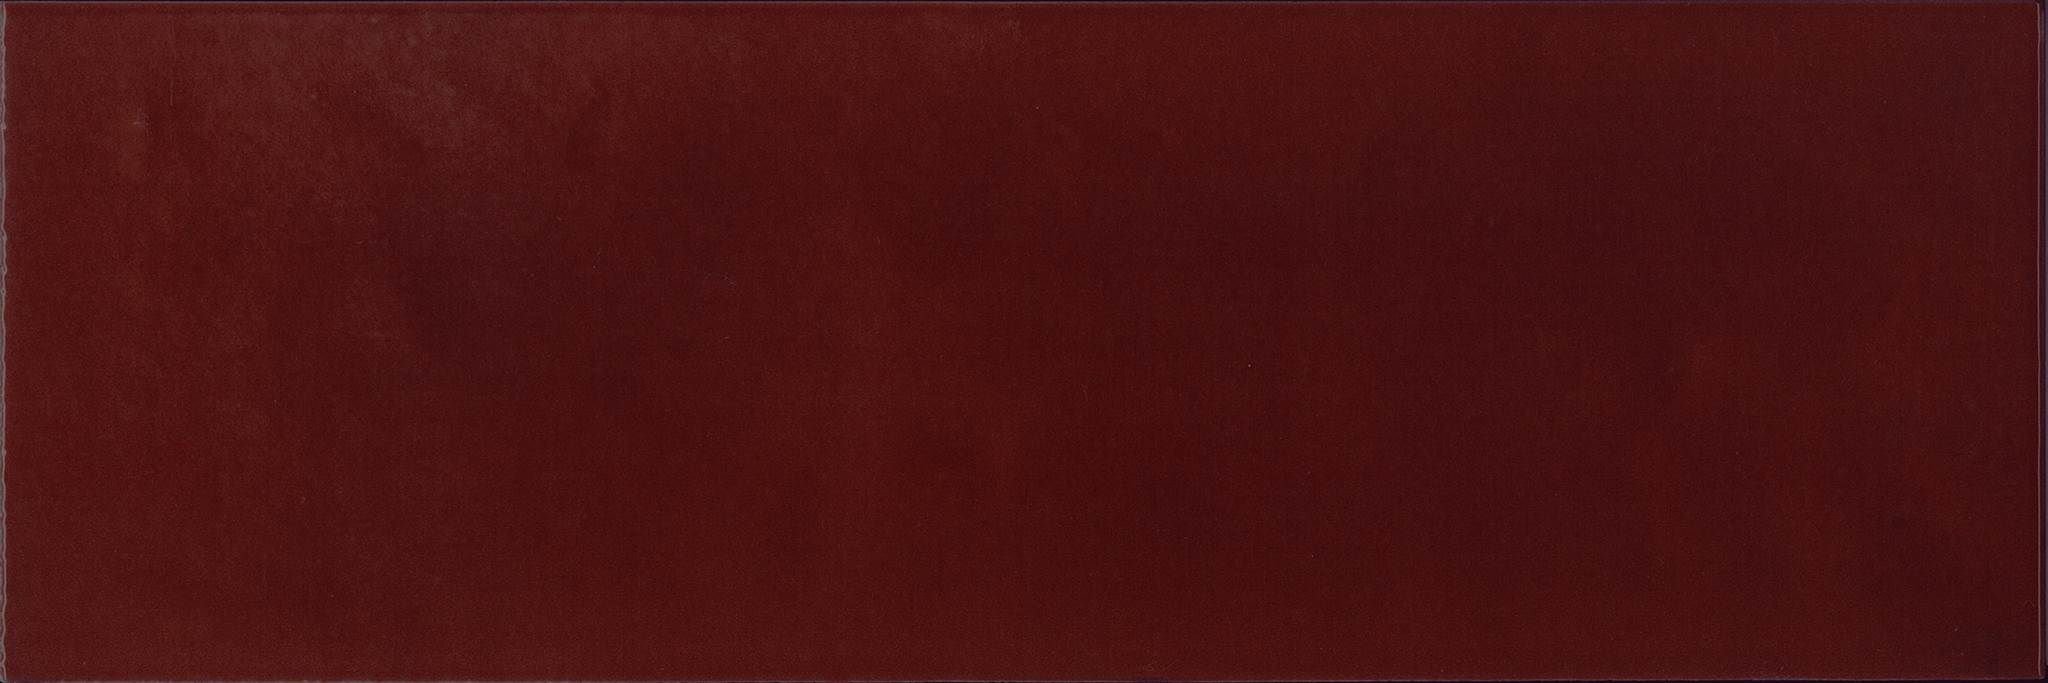 Керамическая плитка Absolut Keramika Damasco Granate Mailano Brillo, цвет бордовый, поверхность глянцевая, прямоугольник, 100x300